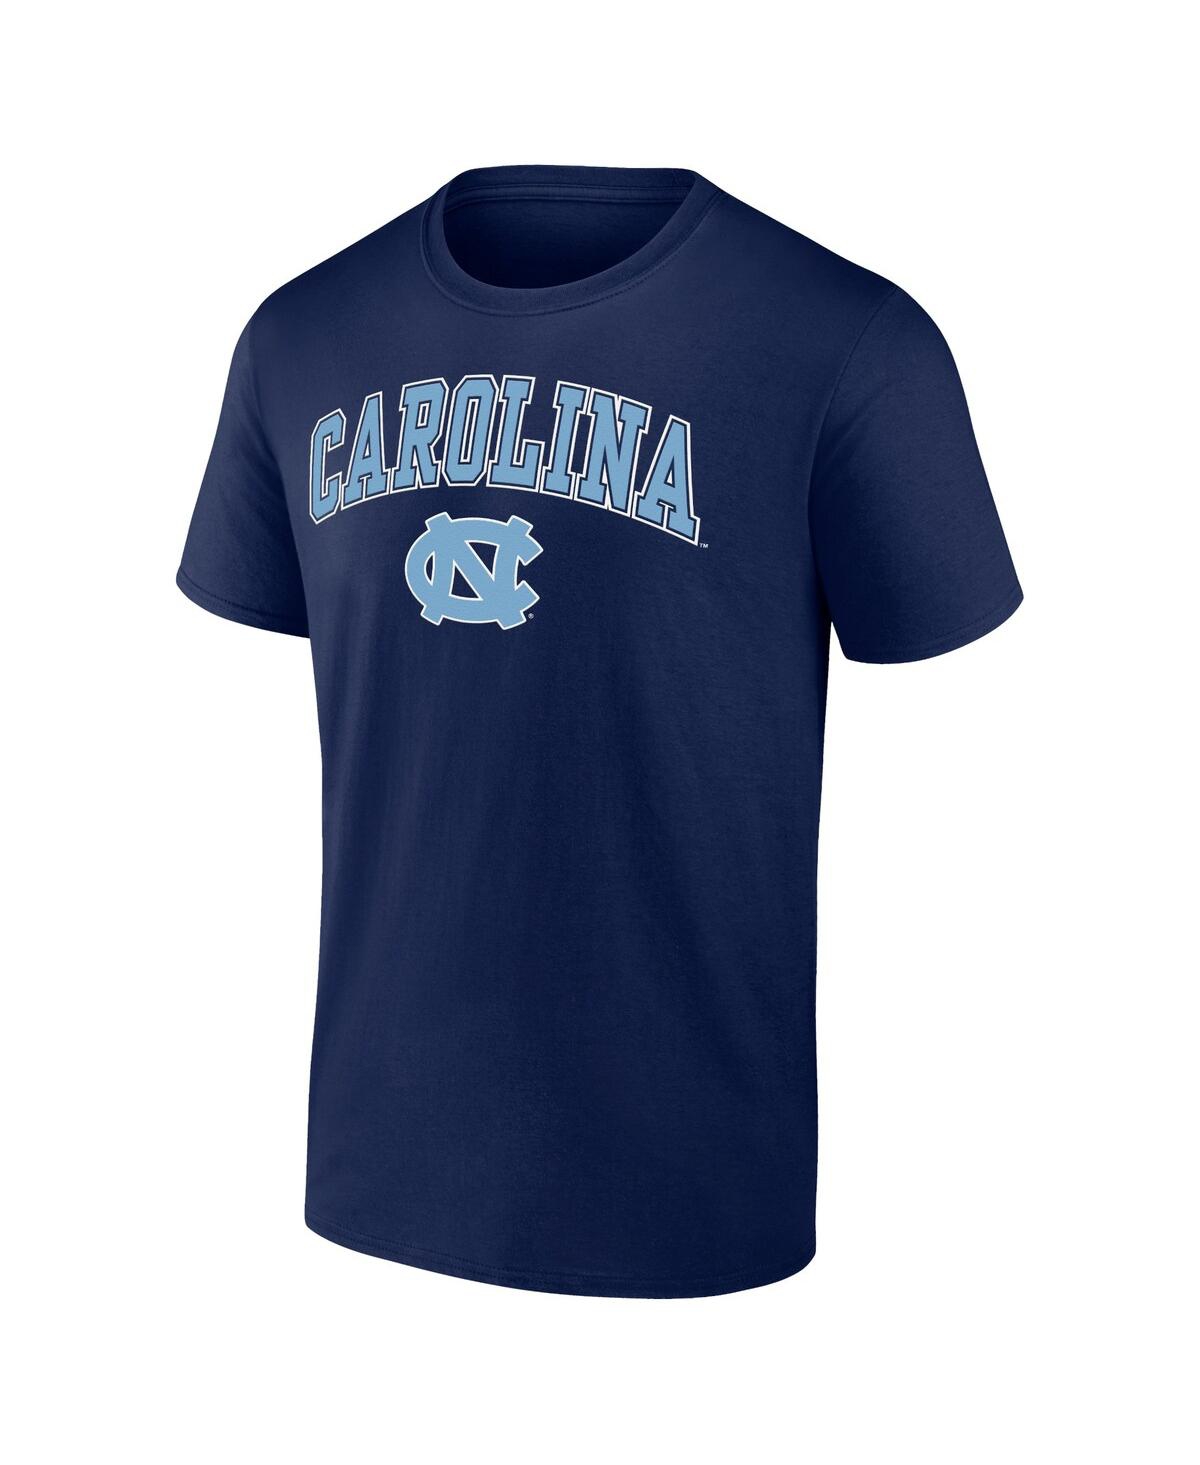 Shop Fanatics Men's  Navy North Carolina Tar Heels Campus T-shirt